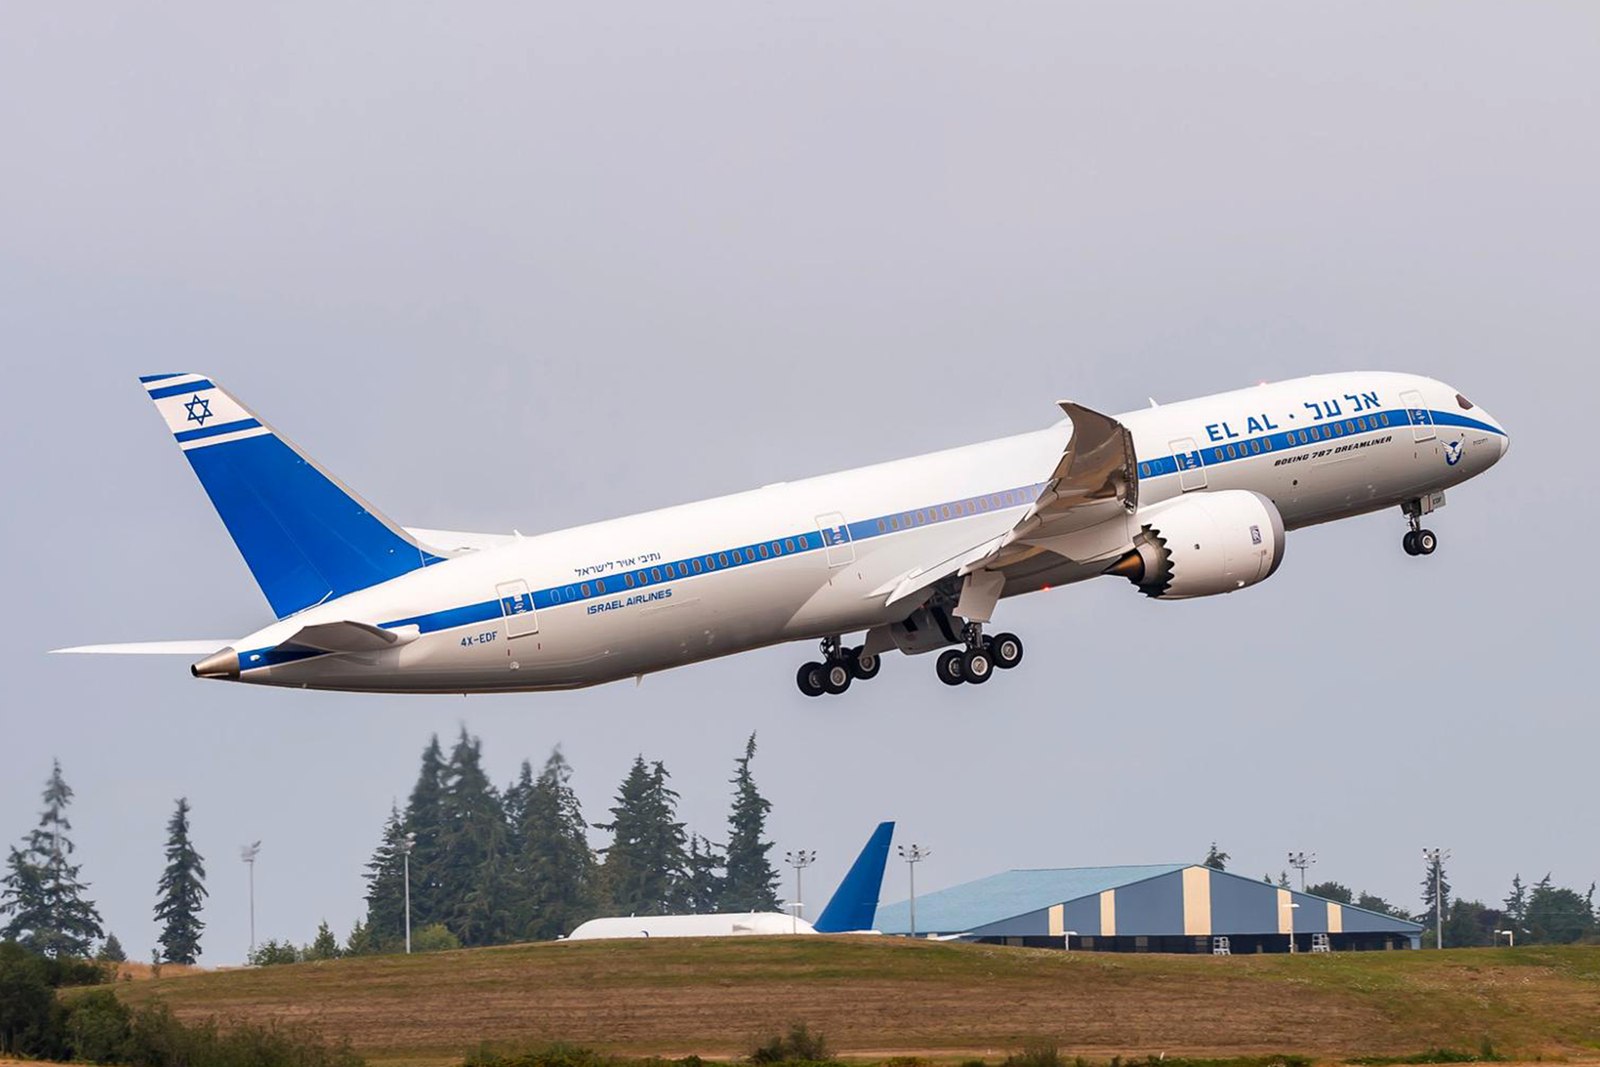 787-9 de El Al con los colores retro de la compañía. Foto: Boeing